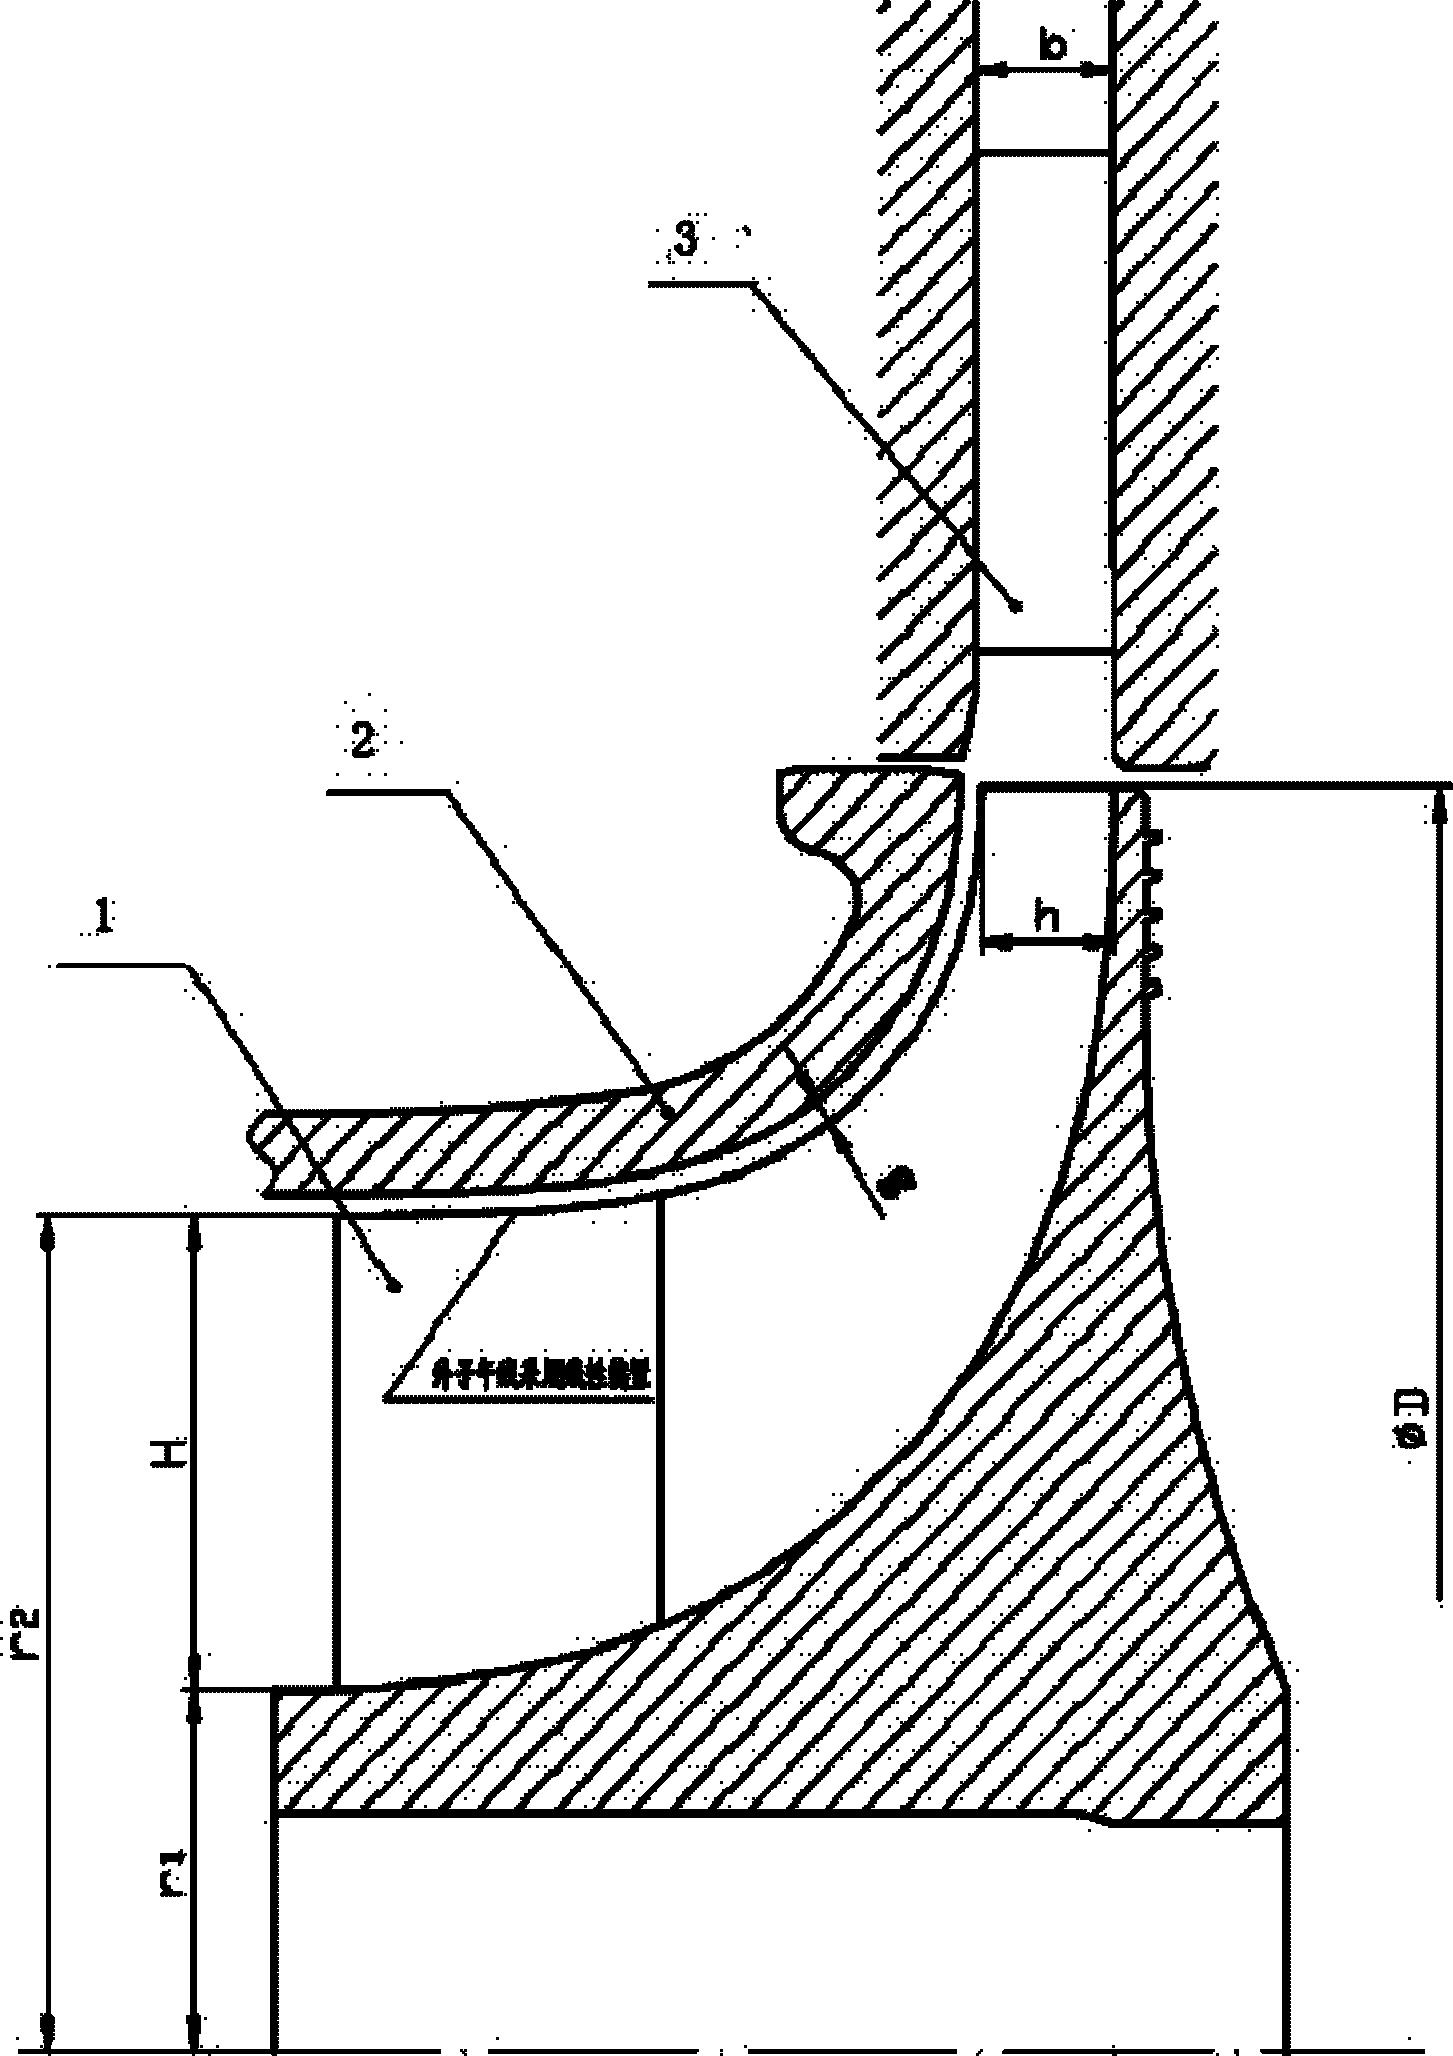 包括两个步骤:步骤一:确定增压器压气机叶轮1的外子午线;步骤二:根据